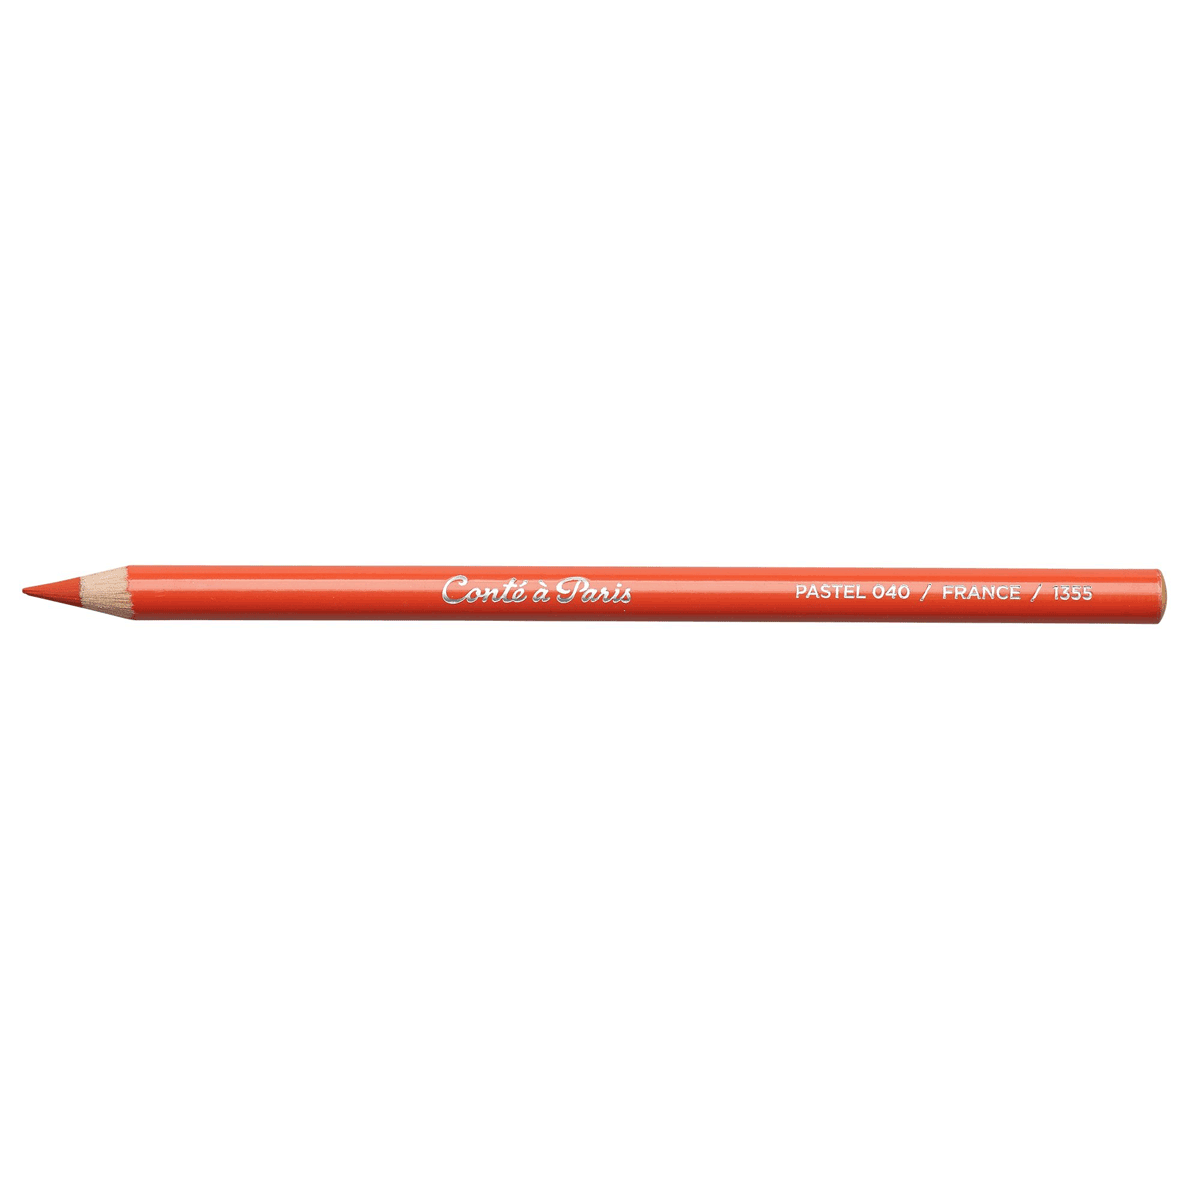 Conte Pastel Pencil - Red Lead